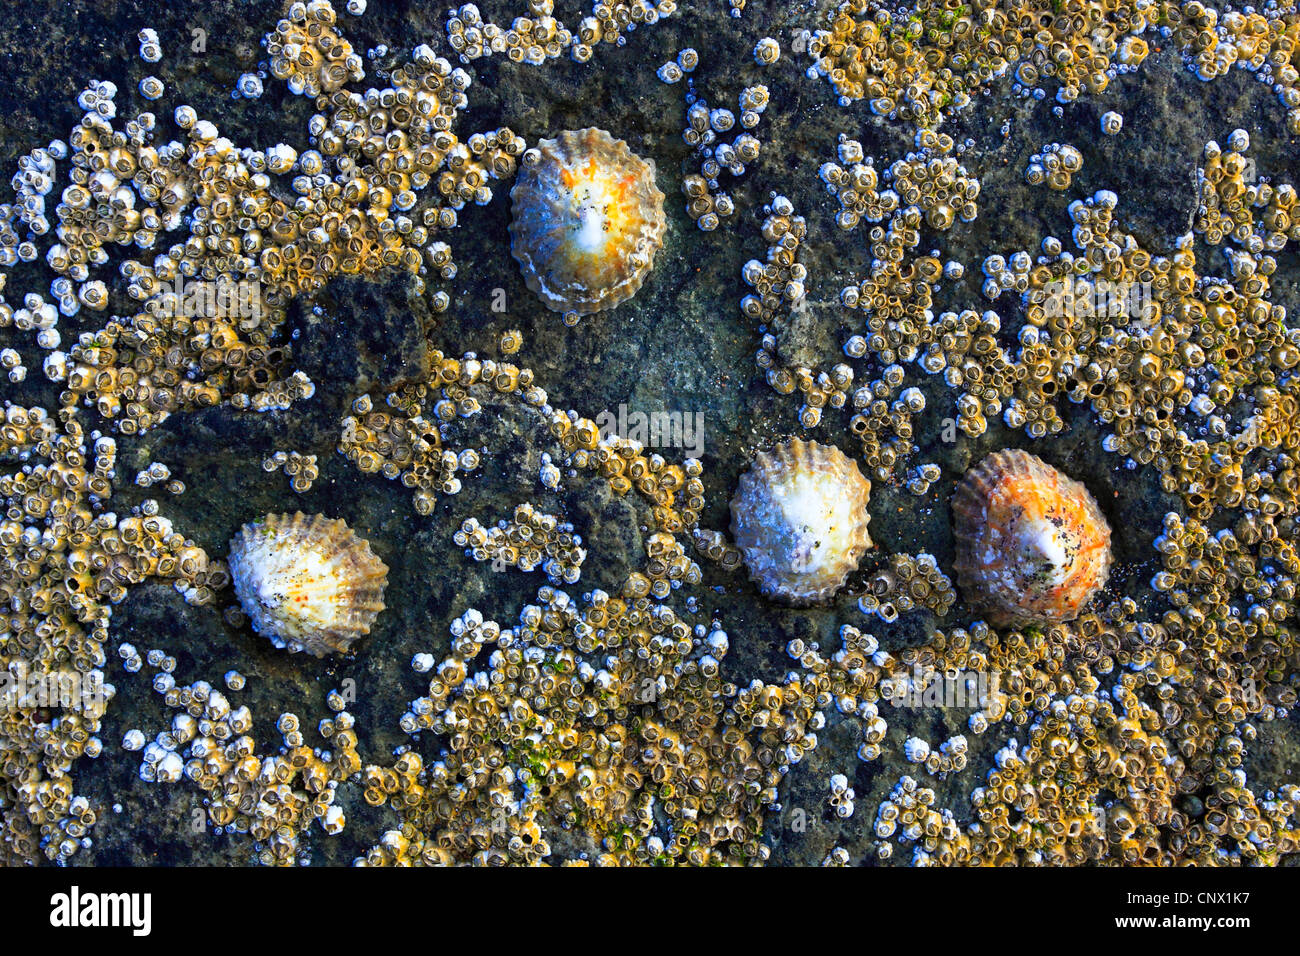 Napfschnecken, echte Napfschnecken (Patellidae), Seepocken und Napfschnecken auf einem Felsen, Großbritannien, Schottland Stockfoto